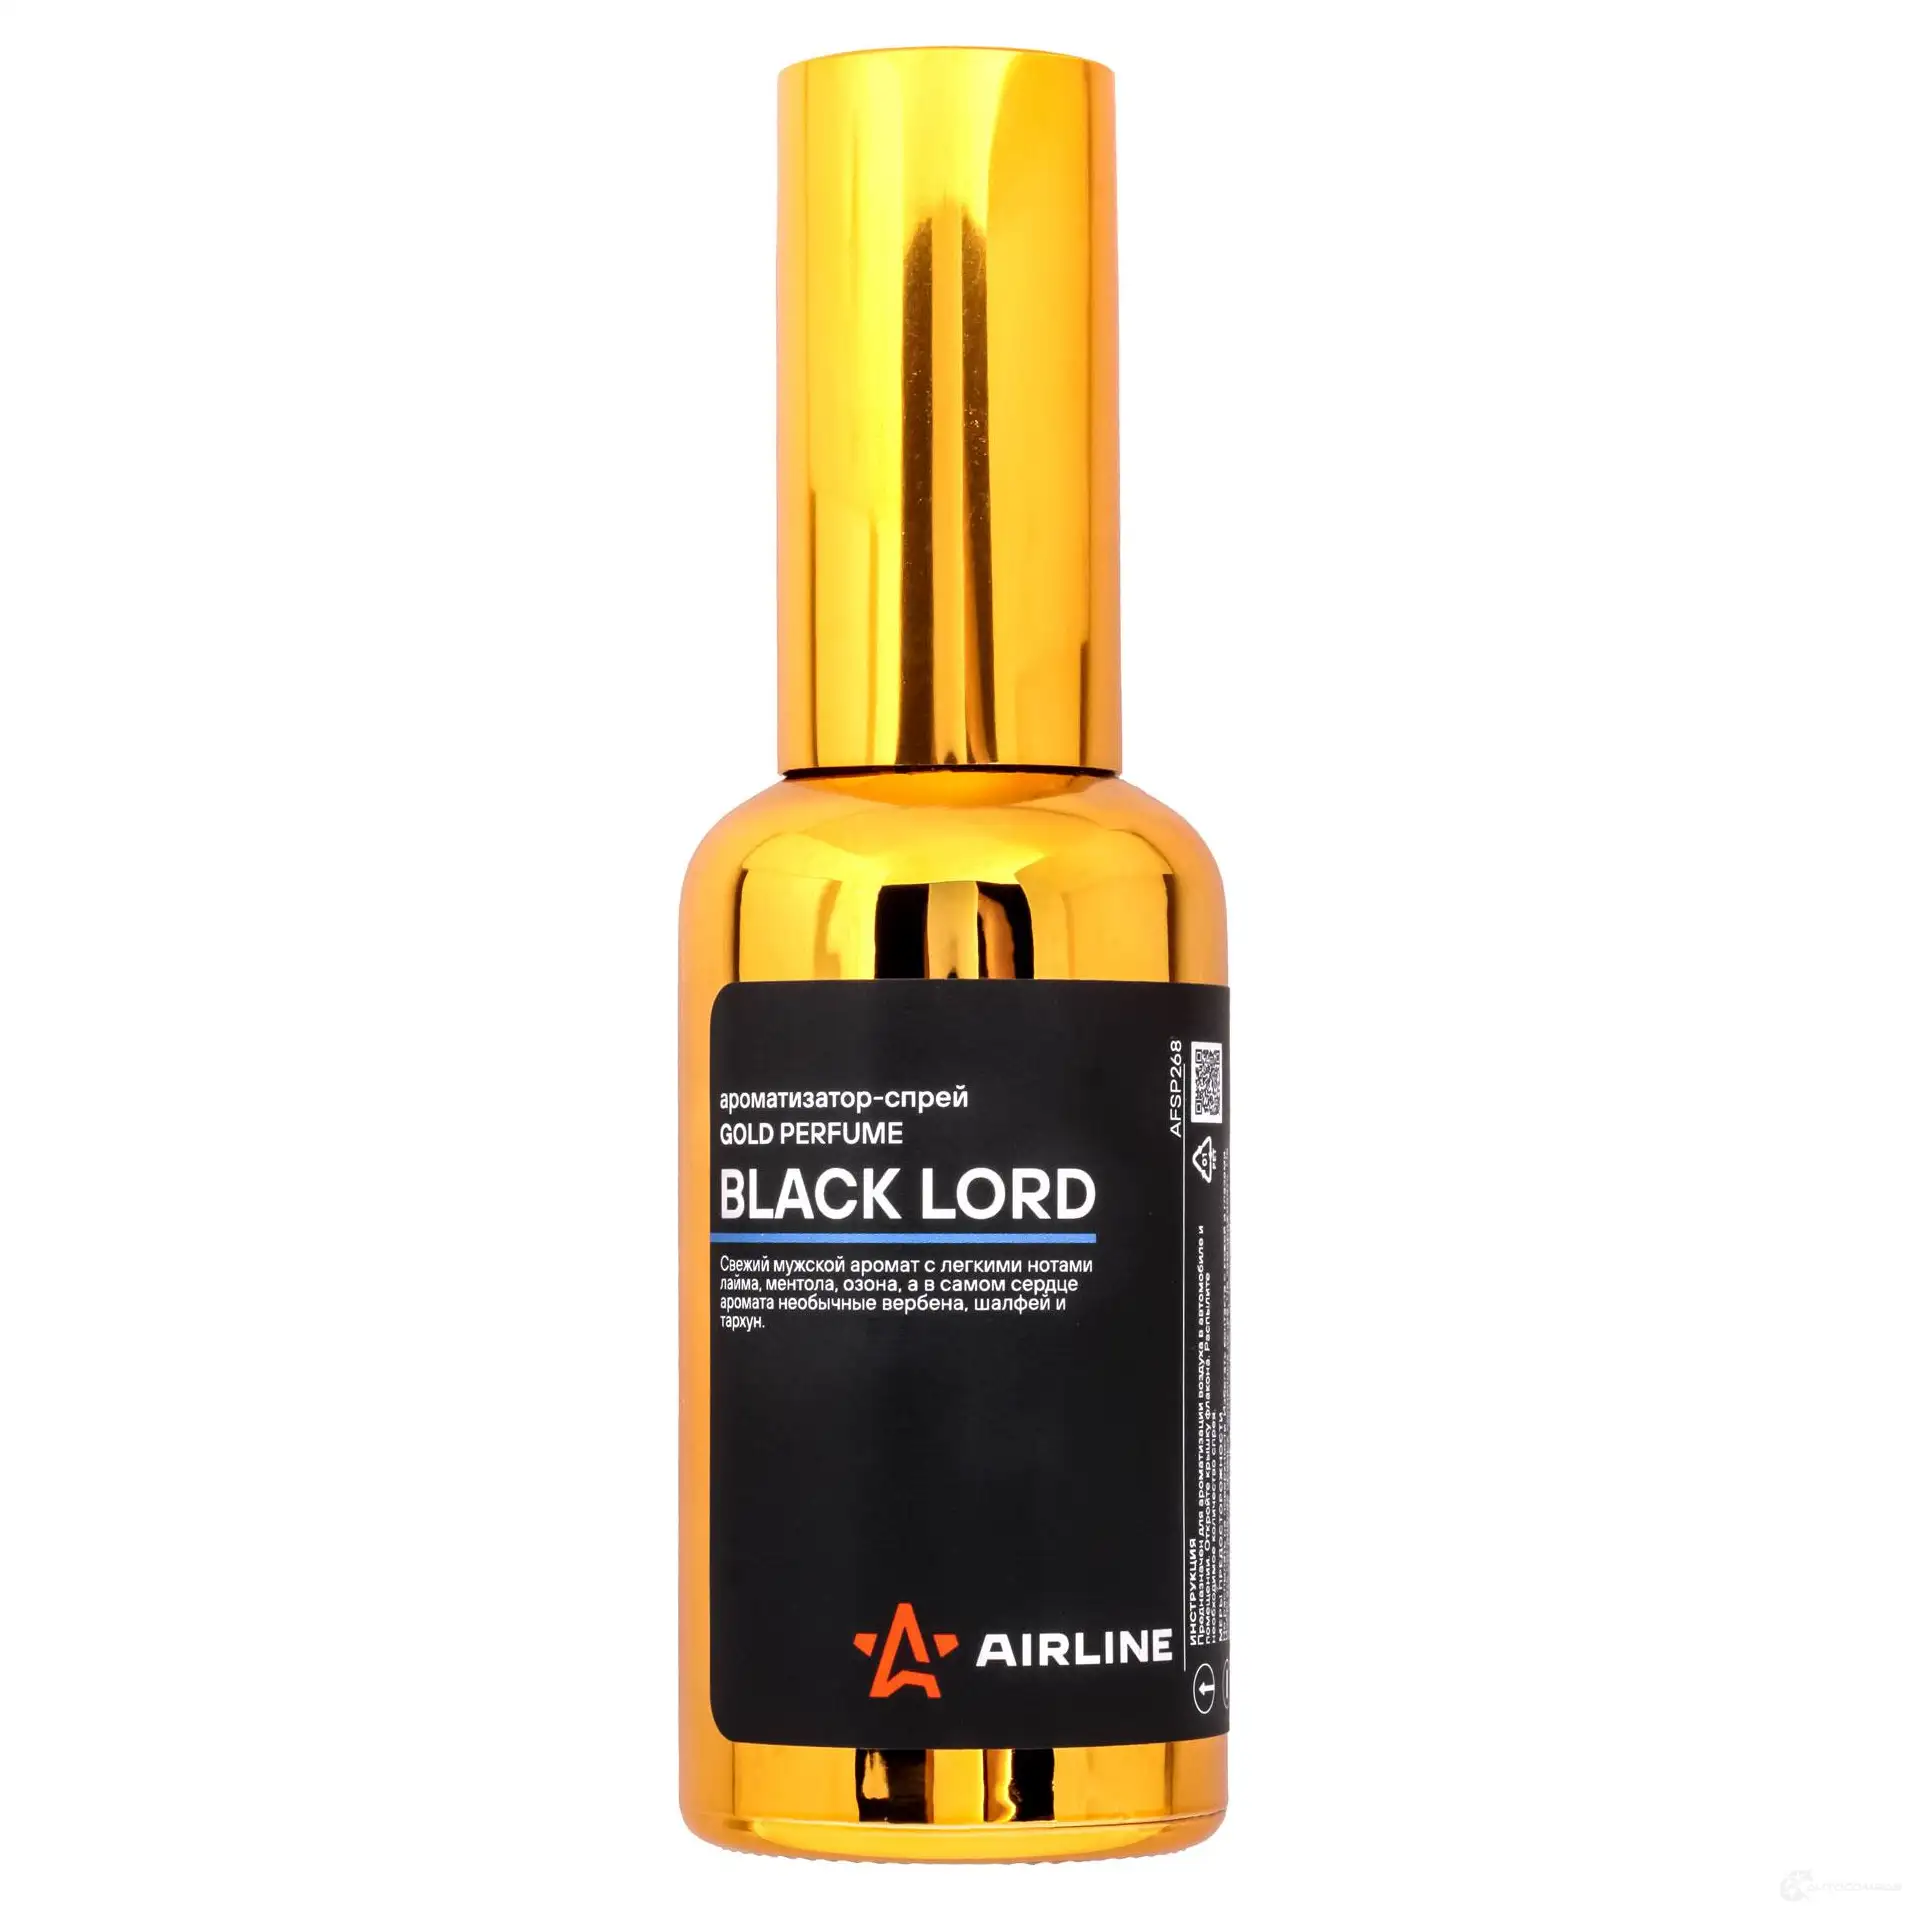 Ароматизатор-спрей GOLD Perfume BLACK LORD 50мл AIRLINE 1438171773 afsp268 T7 8TJK изображение 0